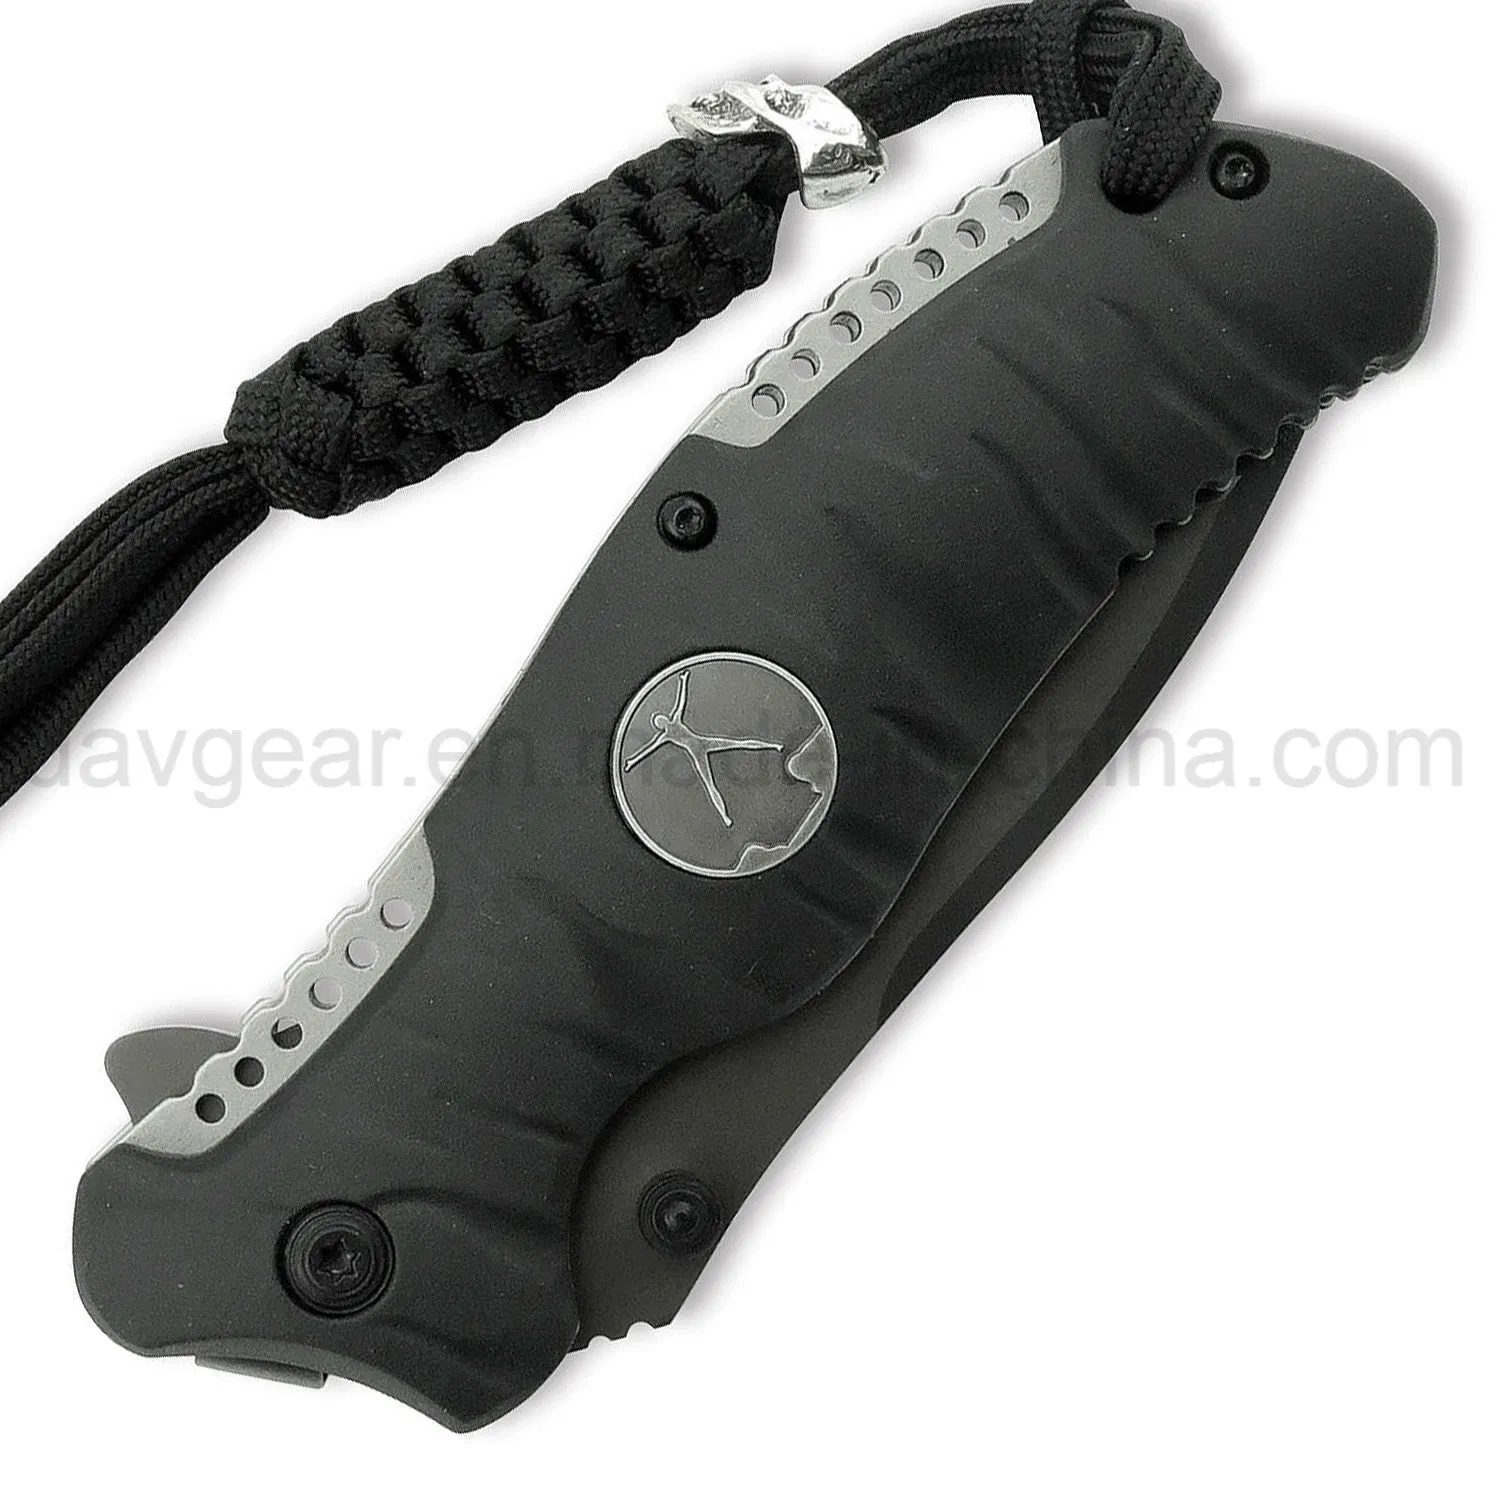 Wholesale/Supplier OEM Inch Pocket Folding Knives Tactical Survival Knife